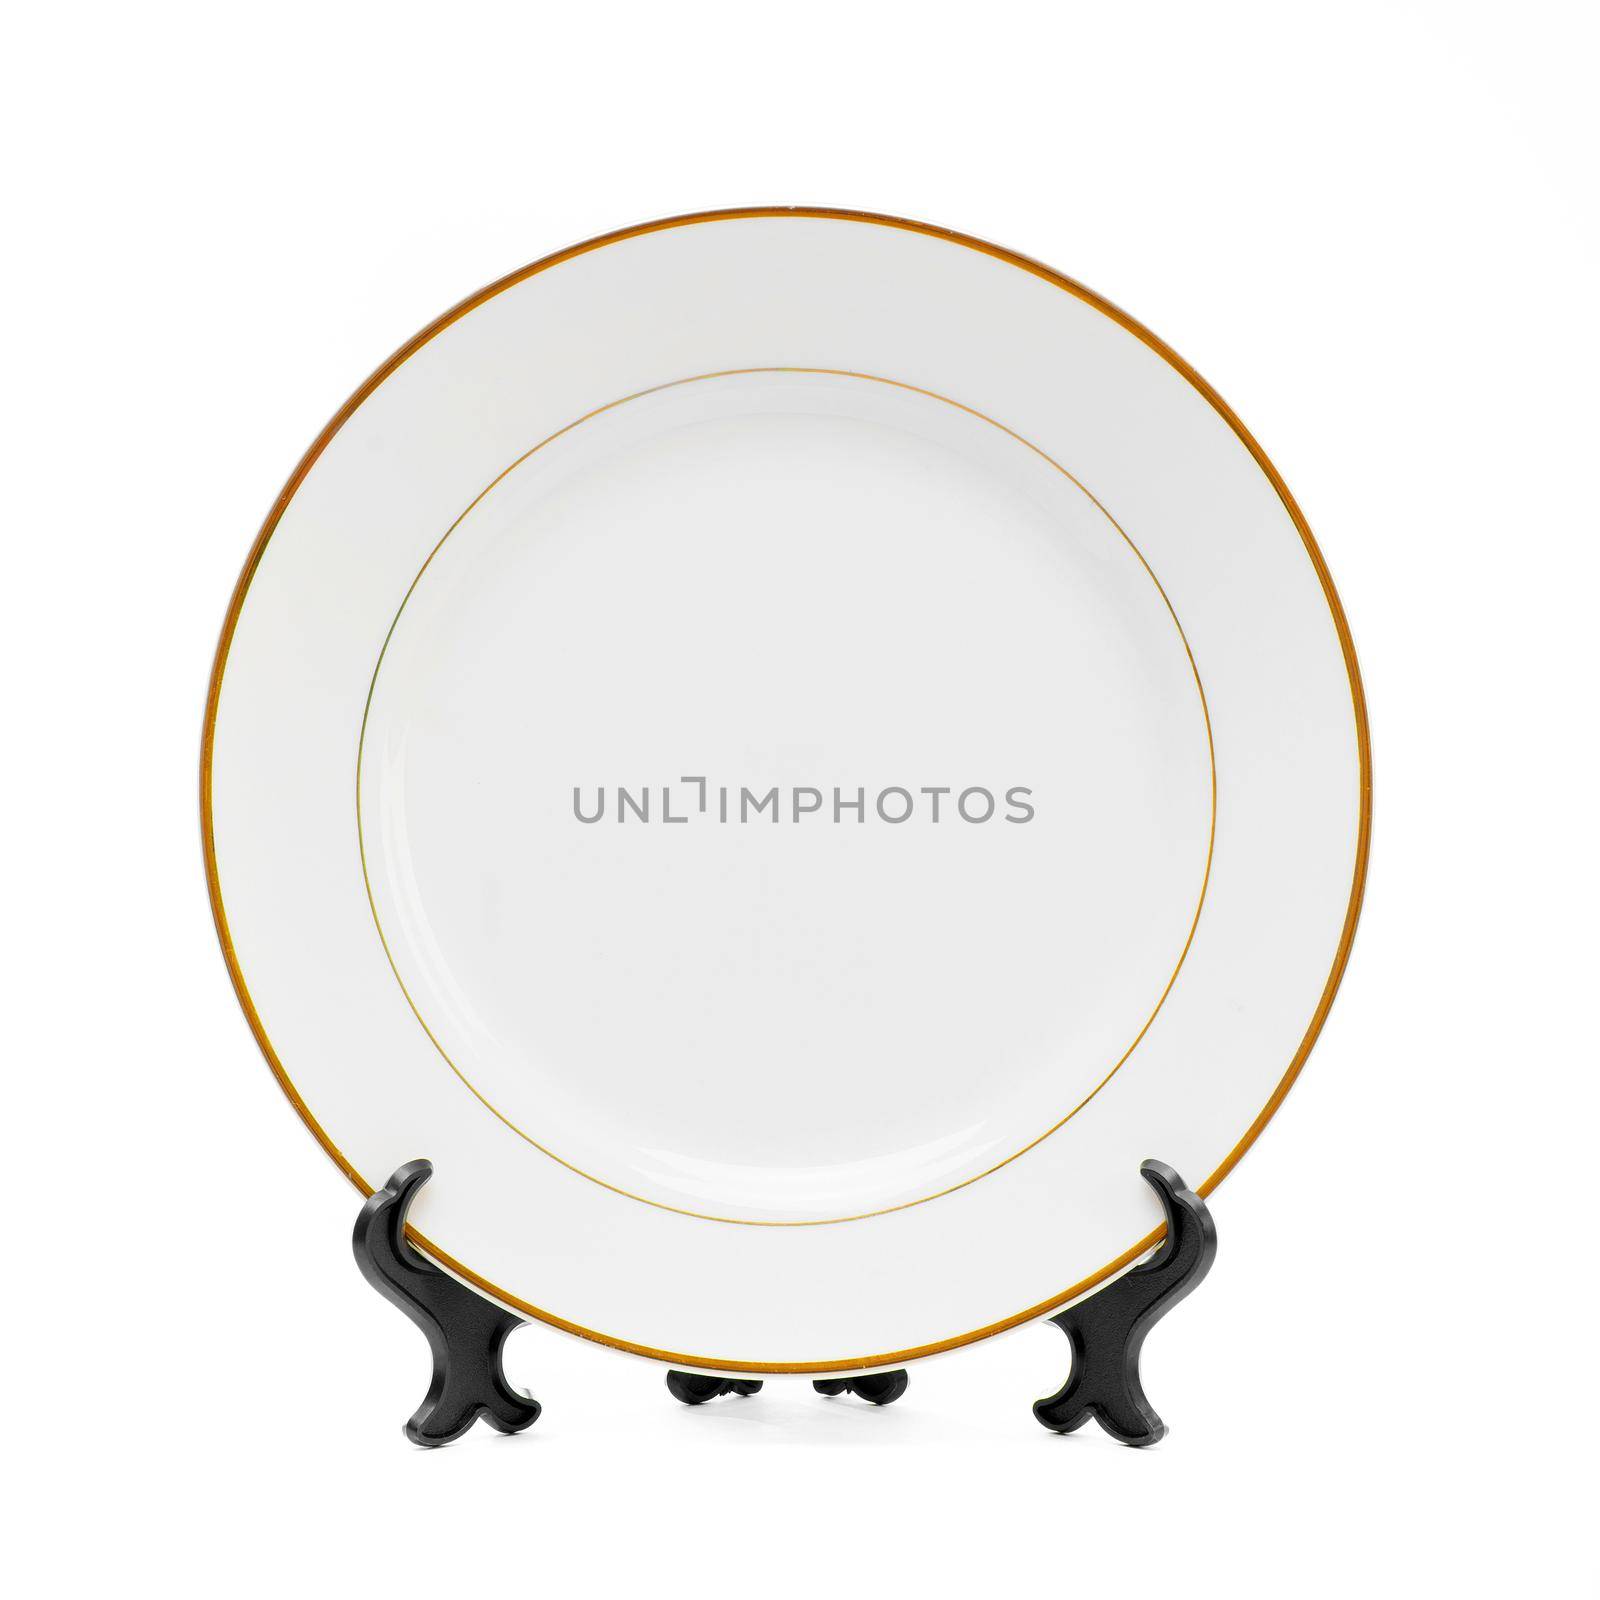 Plate on white by GekaSkr